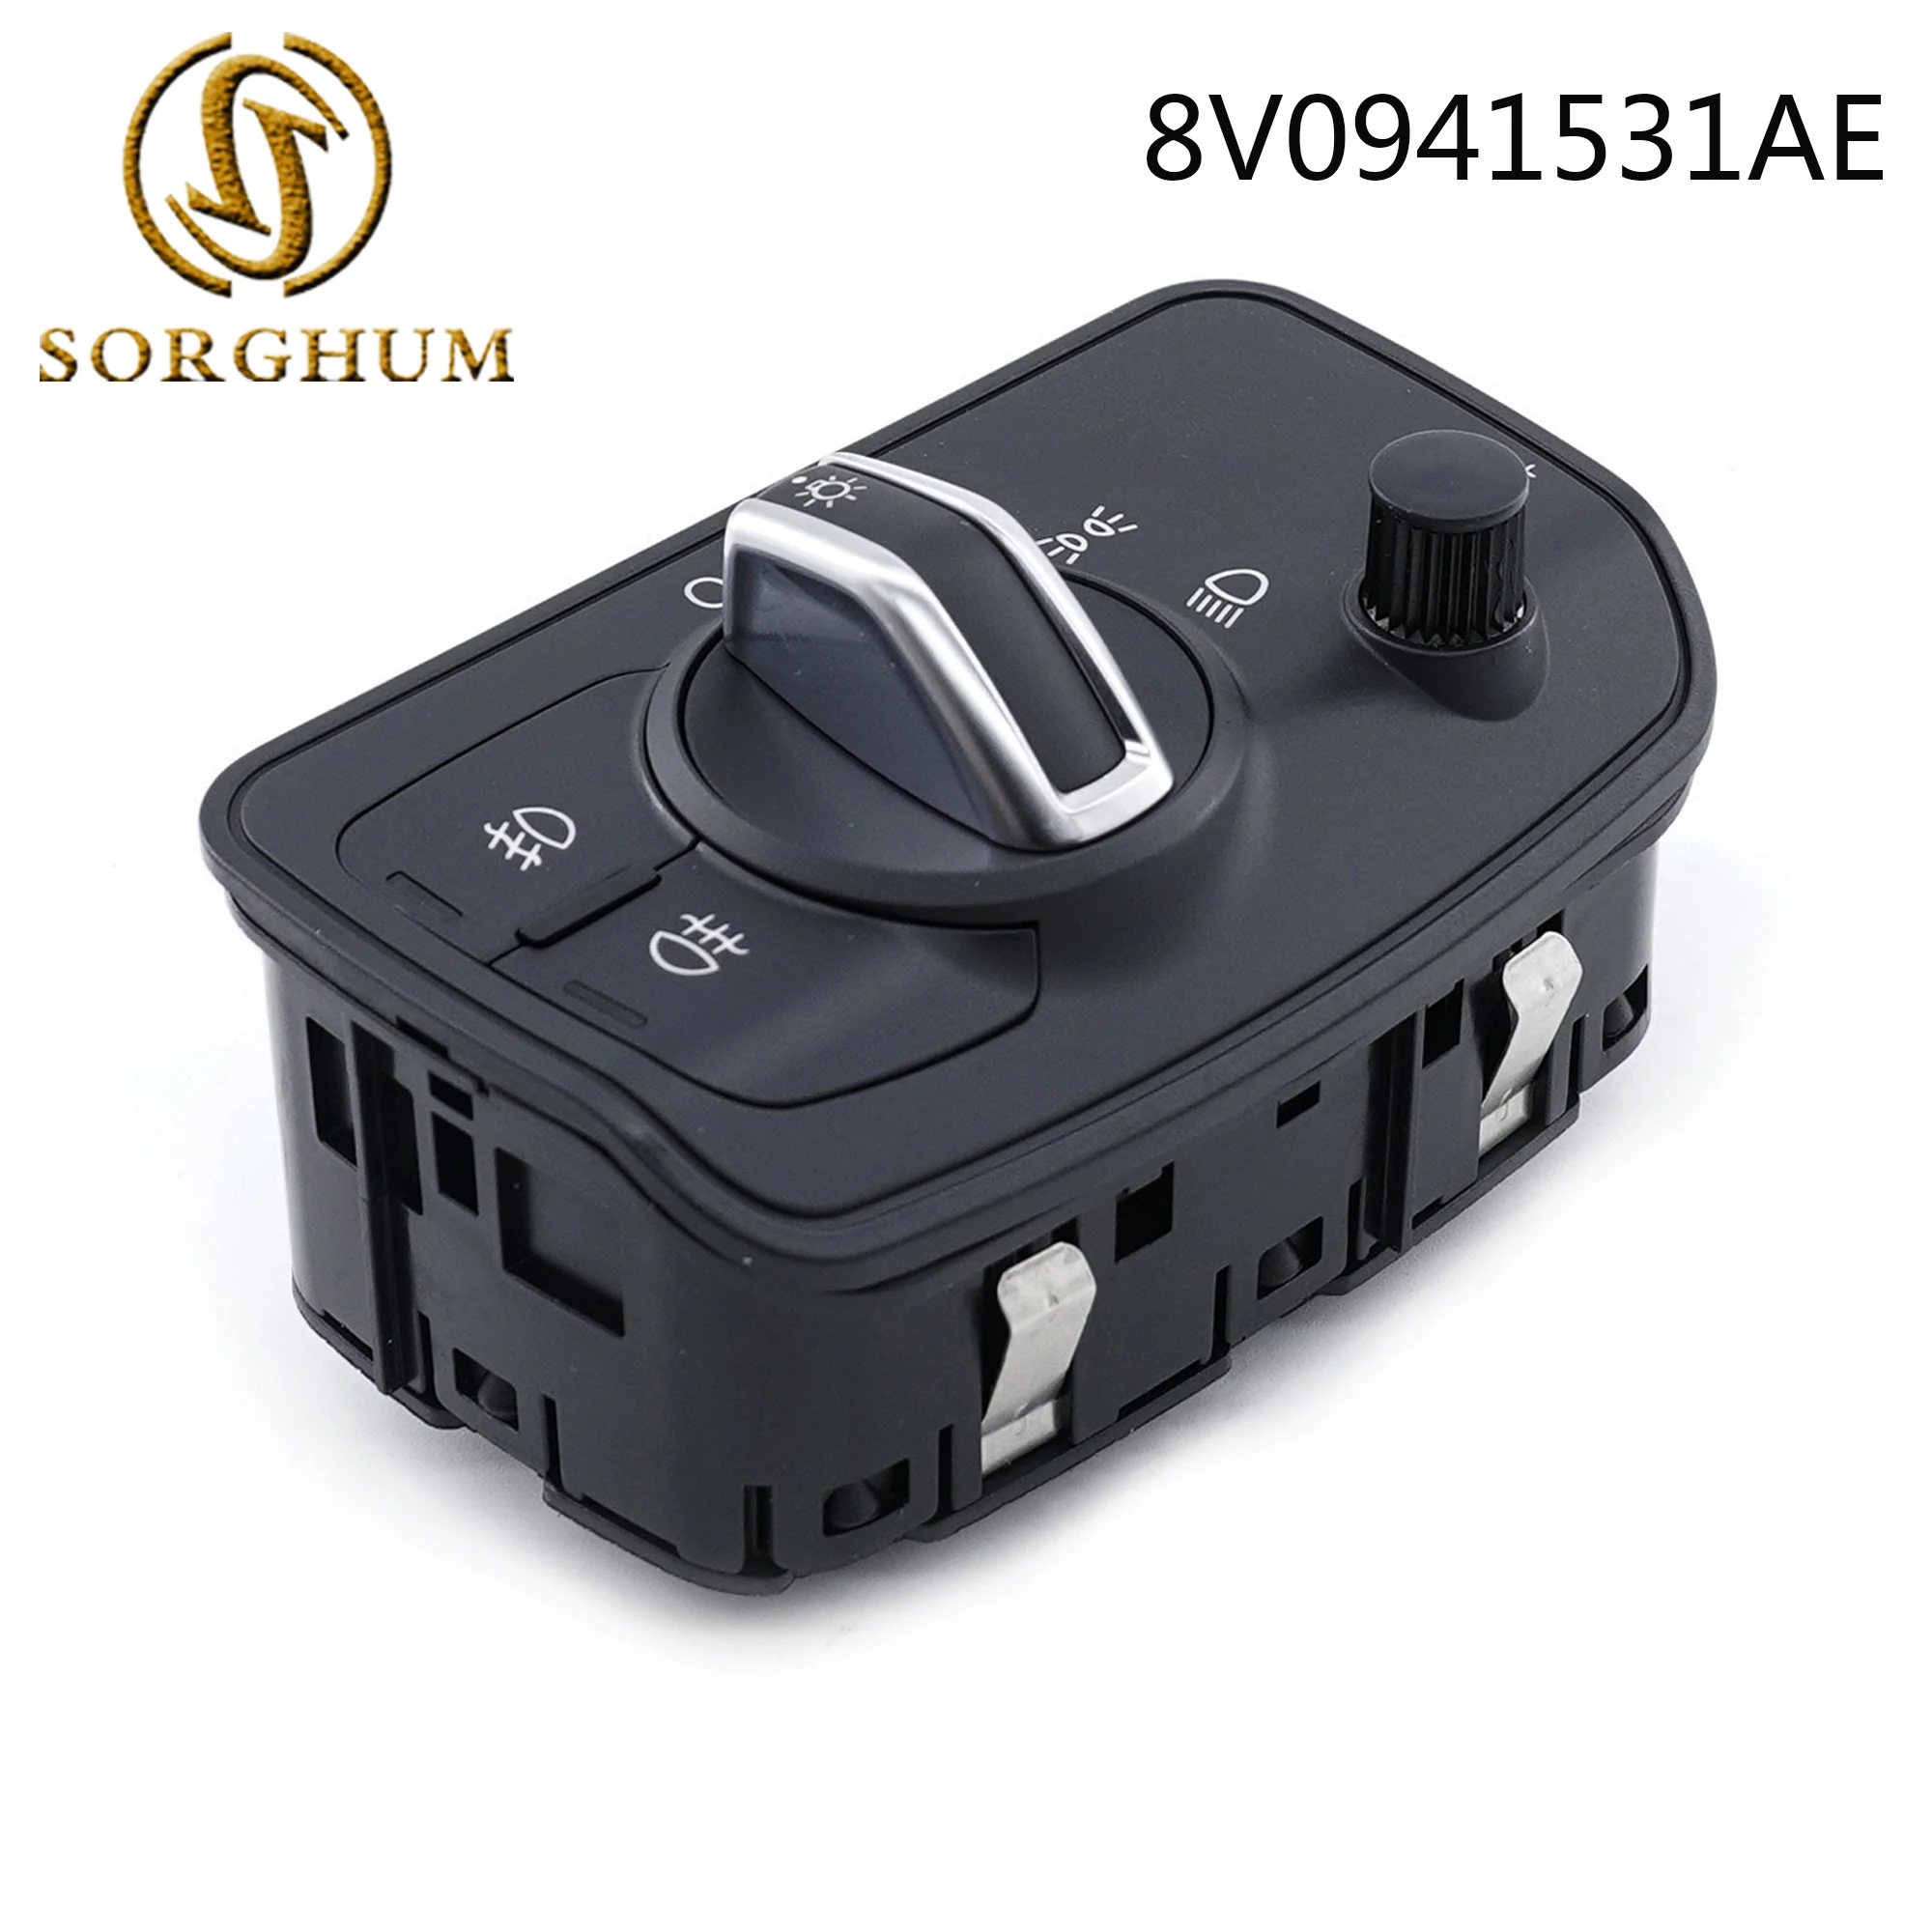 Sorghum Auto Scheinwerfer Scheinwerfer Control Schalter Taste Für Audi A3 / Sportback TT / TT Roadster 8V 0 941 531AE 8V0941531AE